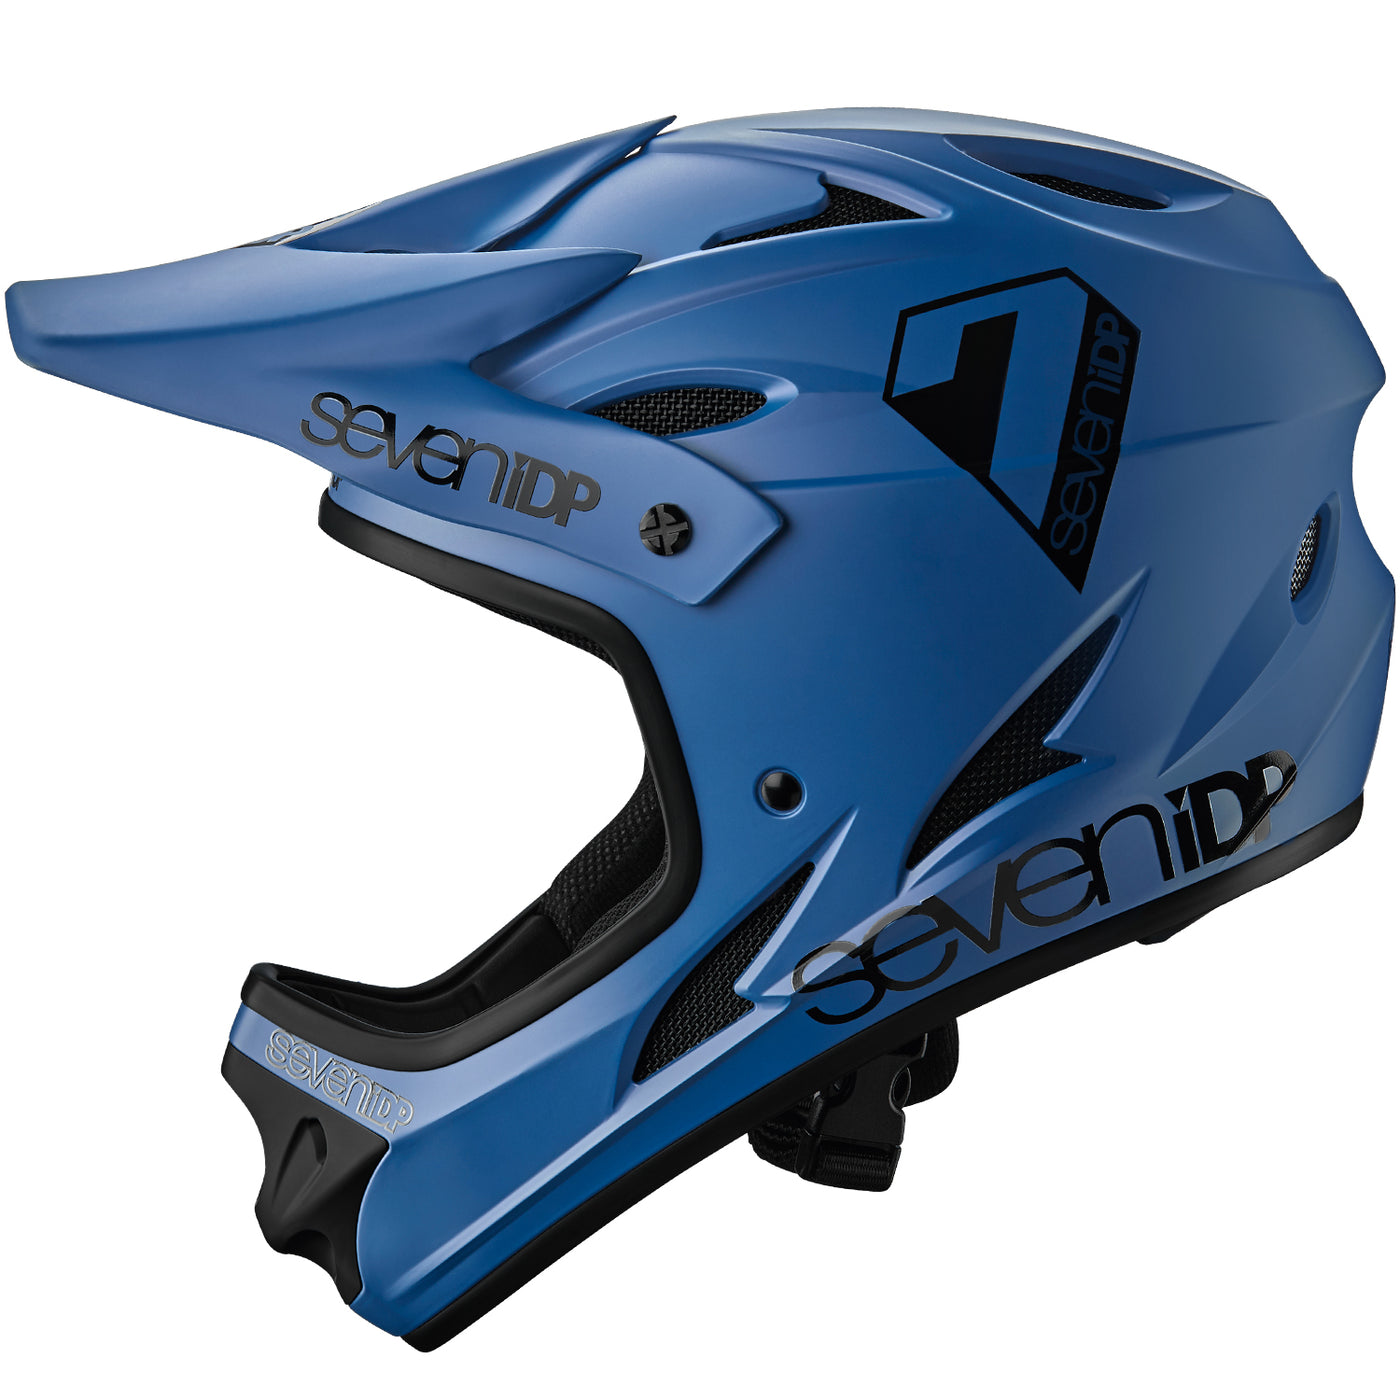 7iDP M1 Helmet - Diesel Blue